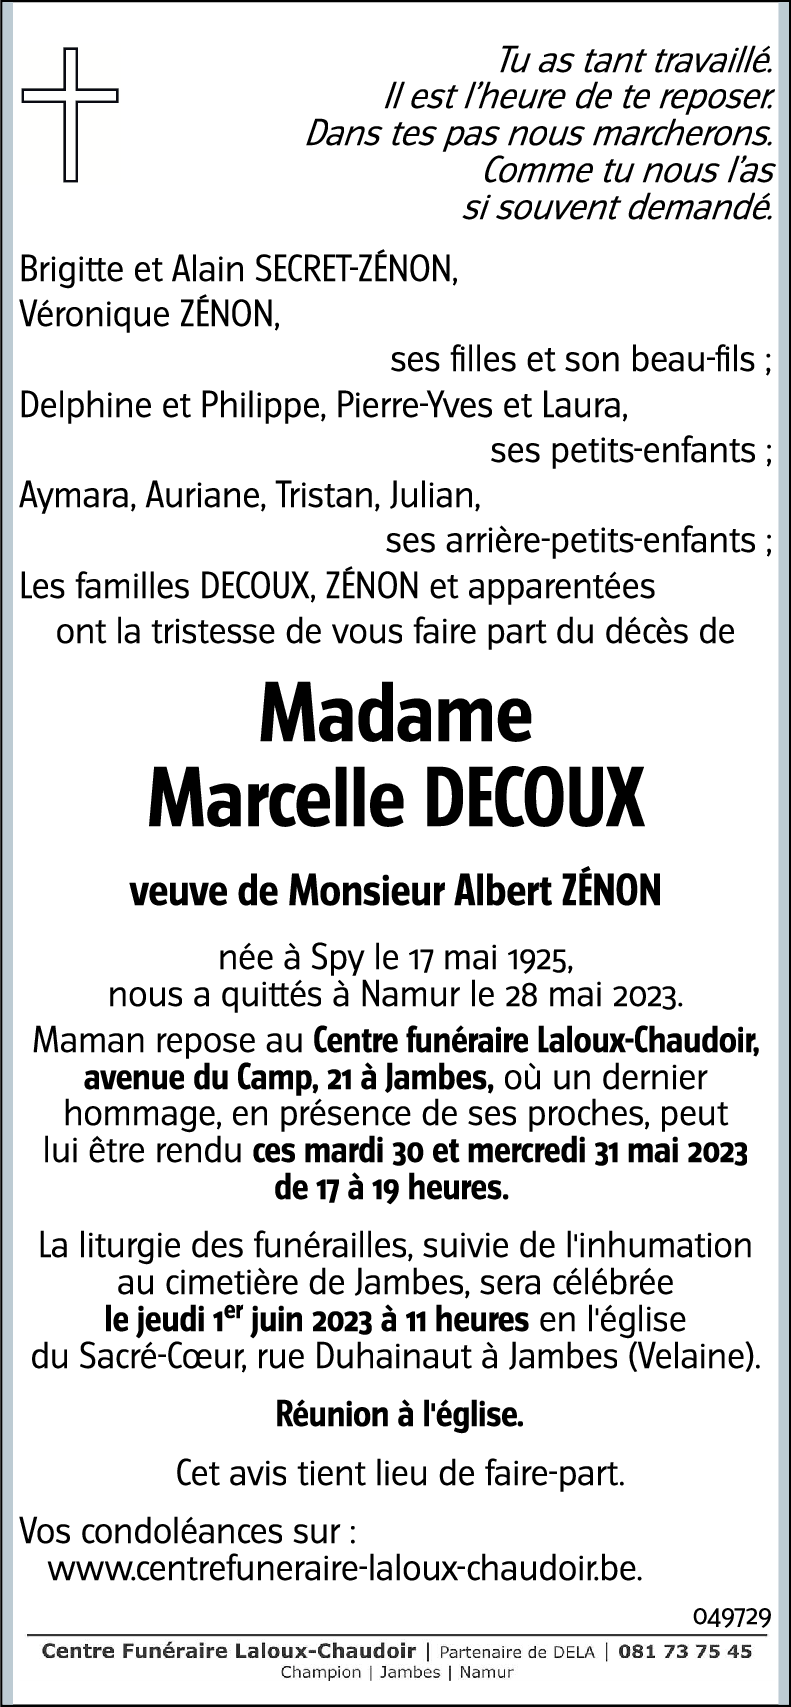 Marcelle DECOUX